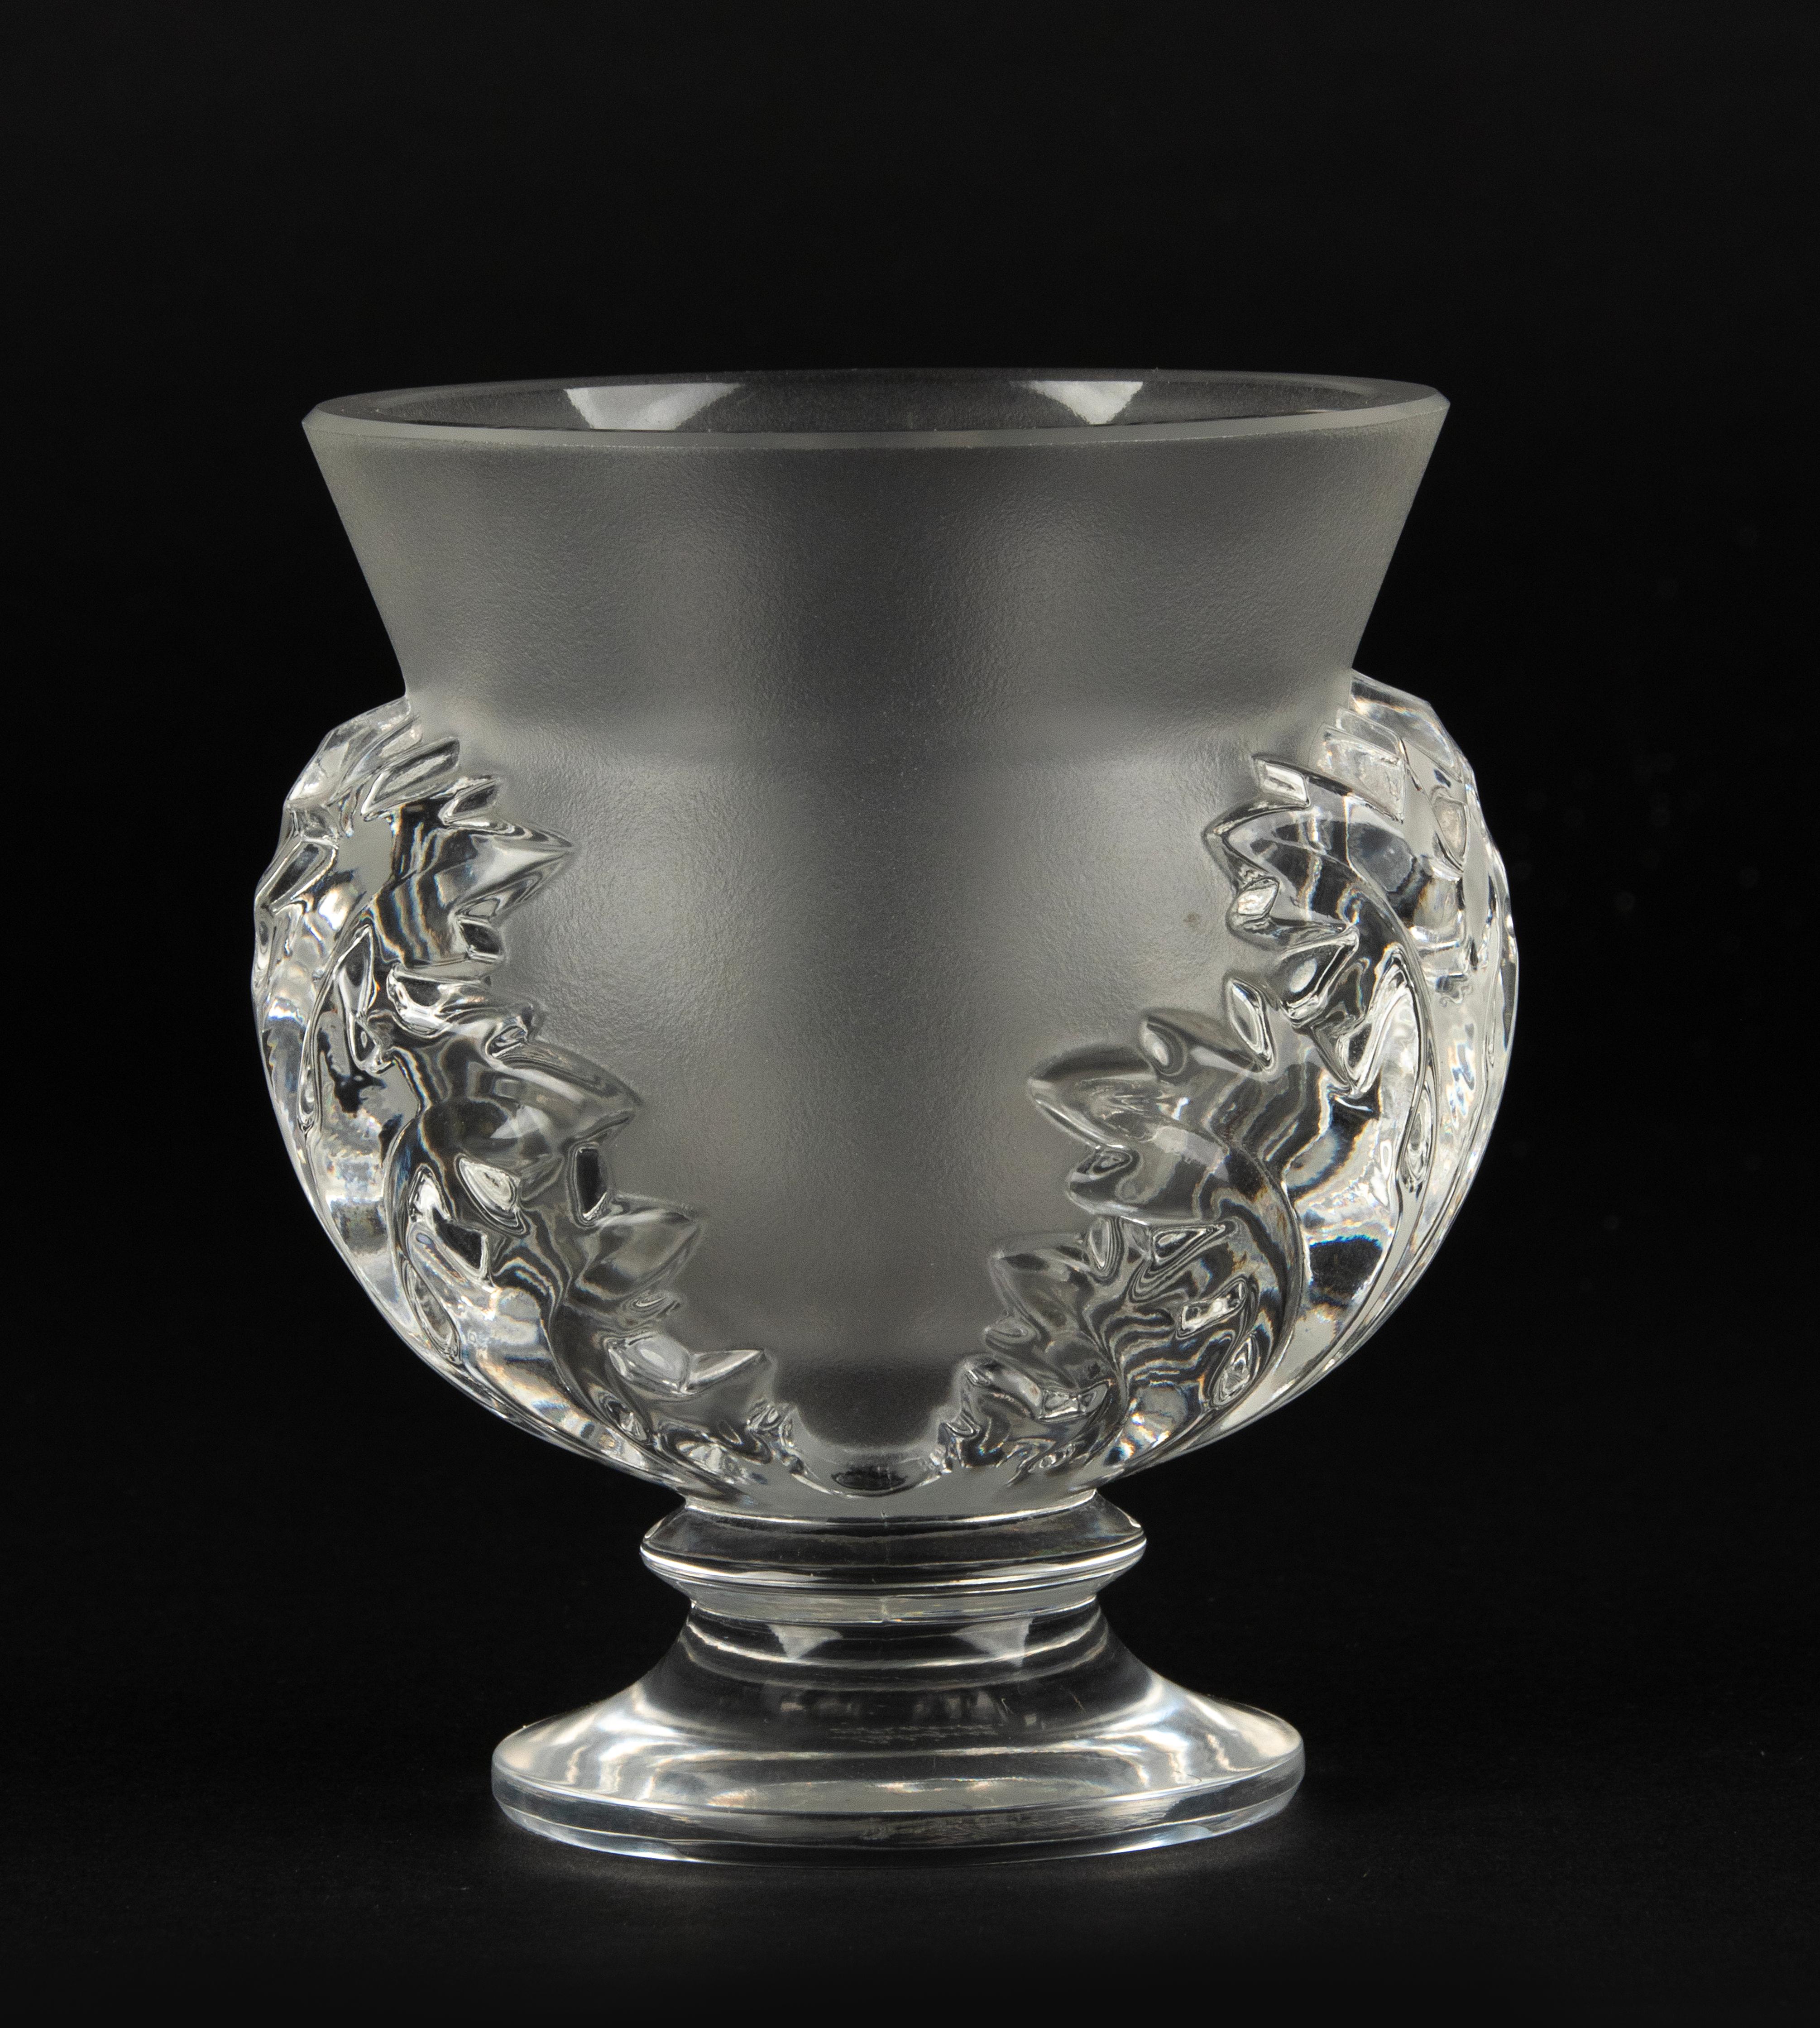 Un joli petit vase en cristal, fabriqué par la marque française Lalique. 
Le nom du modèle est Saint Cloud. 
Le vase est en très bon état. Il n'y a pas d'ébréchures ni de lignes de démarcation. 
Signé en bas. 

Dimensions : 10 x 11 cm et 12 cm de